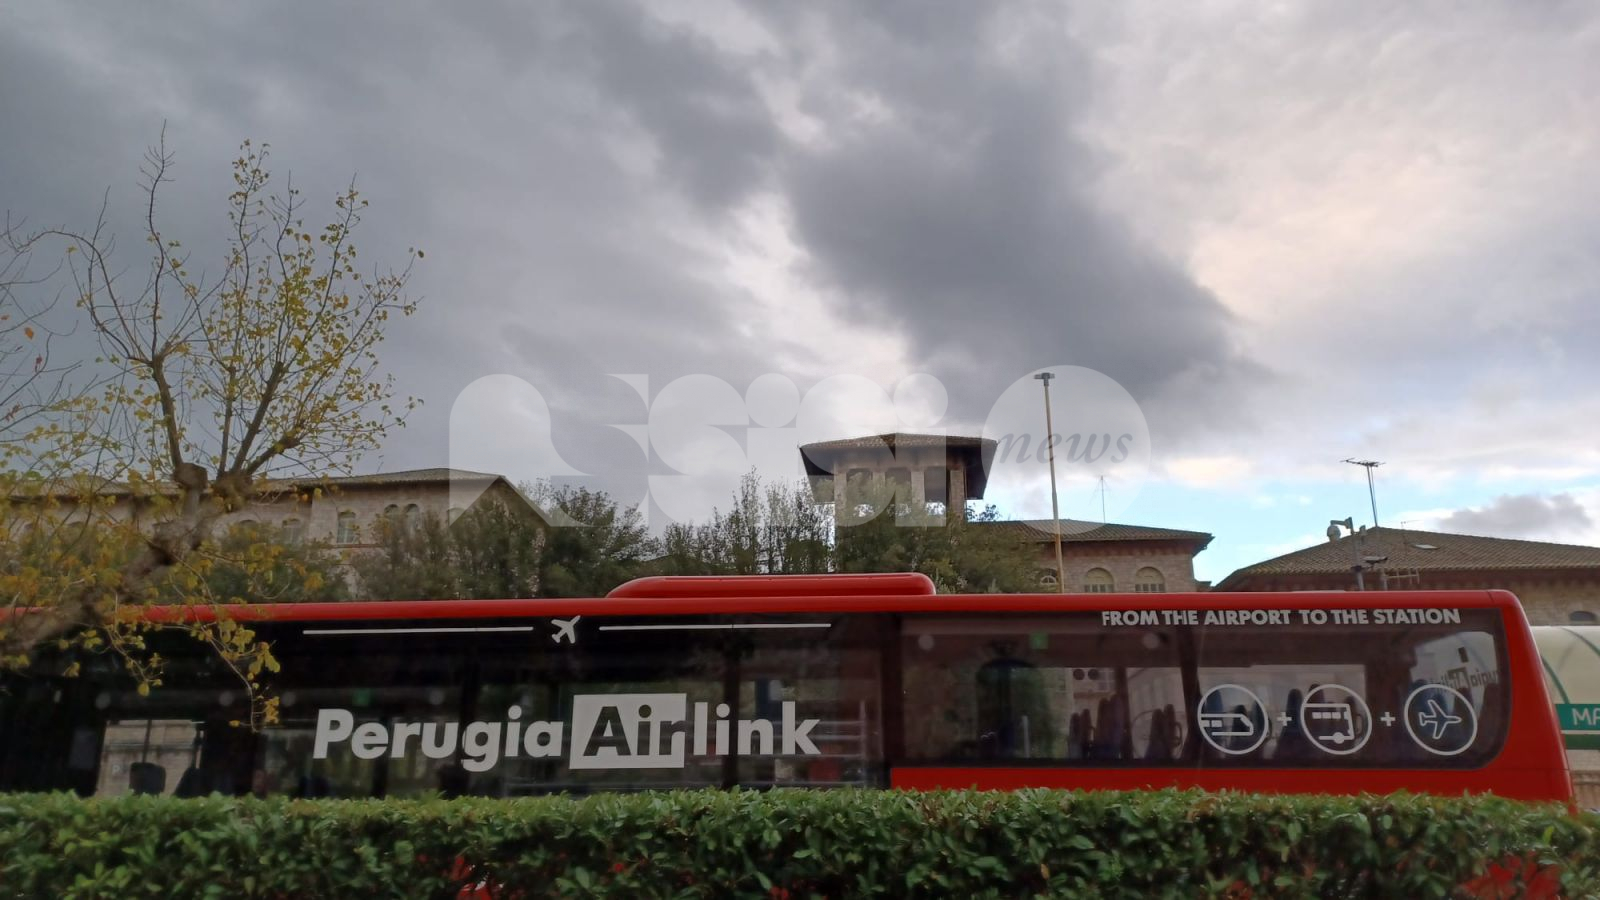 Perugia Airlink confermato fino a marzo 2023 con cambio nome: arriva Umbria Airlink